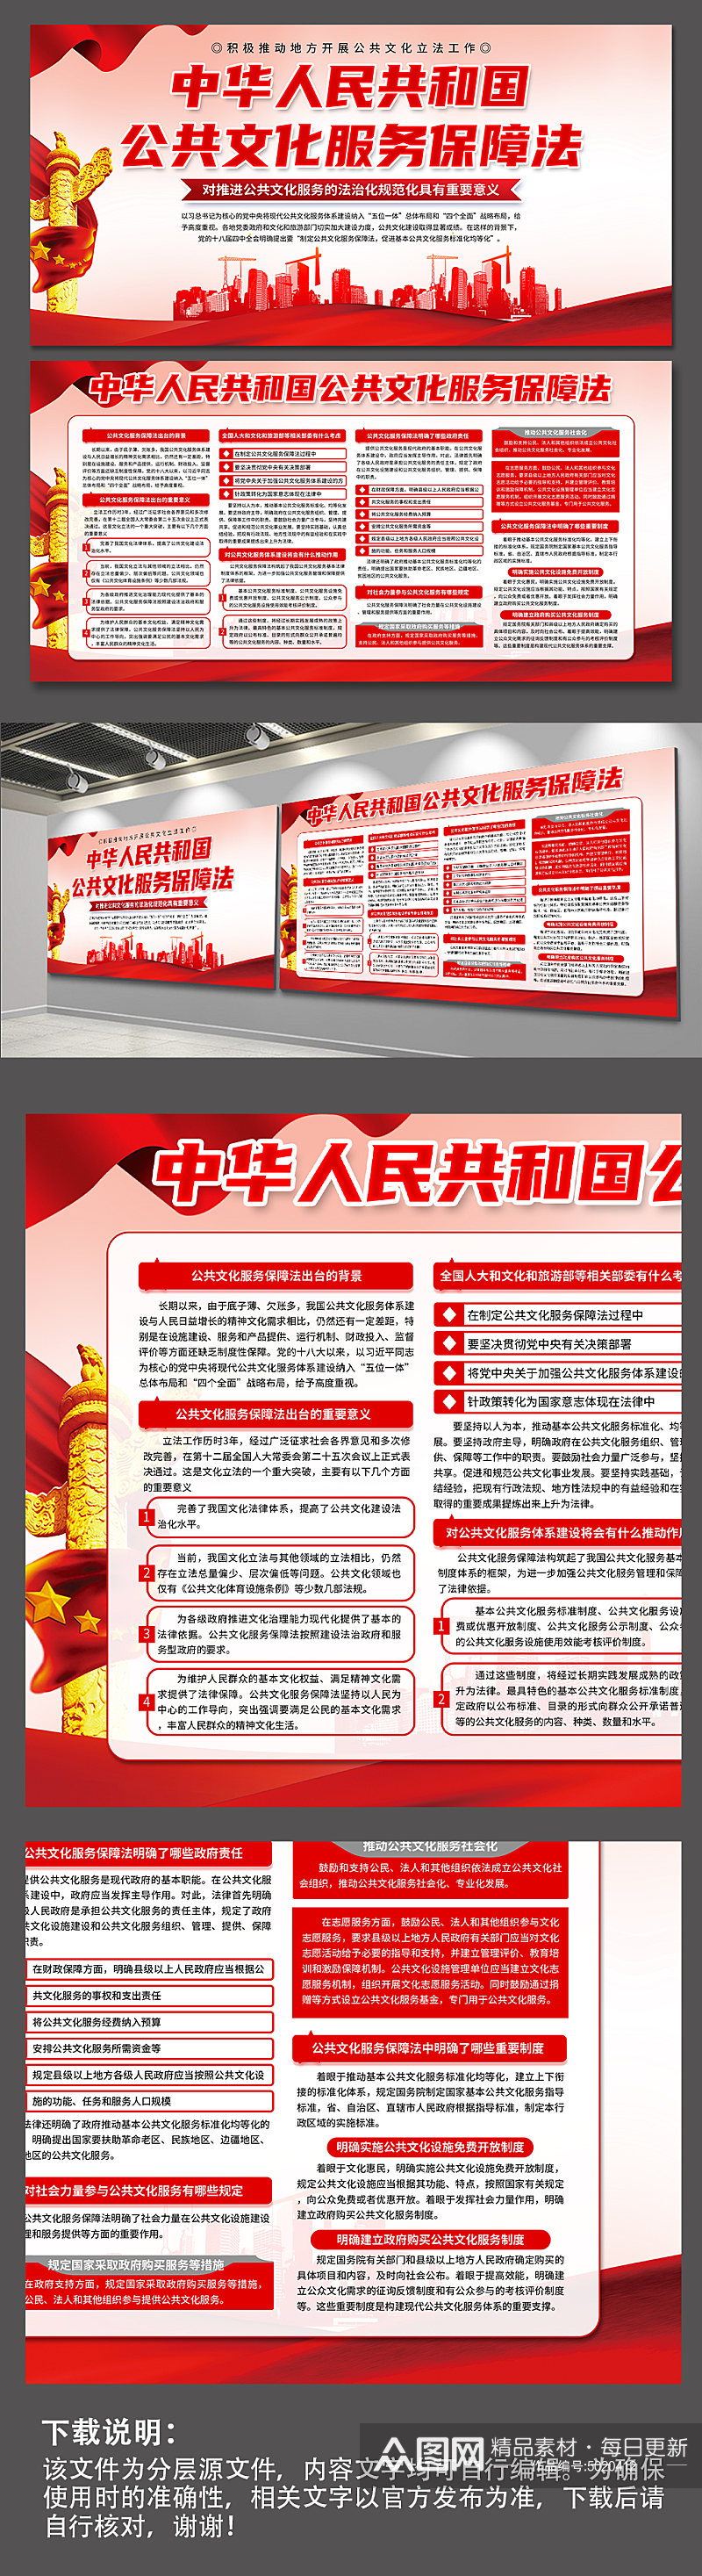 大气中华人民共和国公共文化服务保障法展板素材